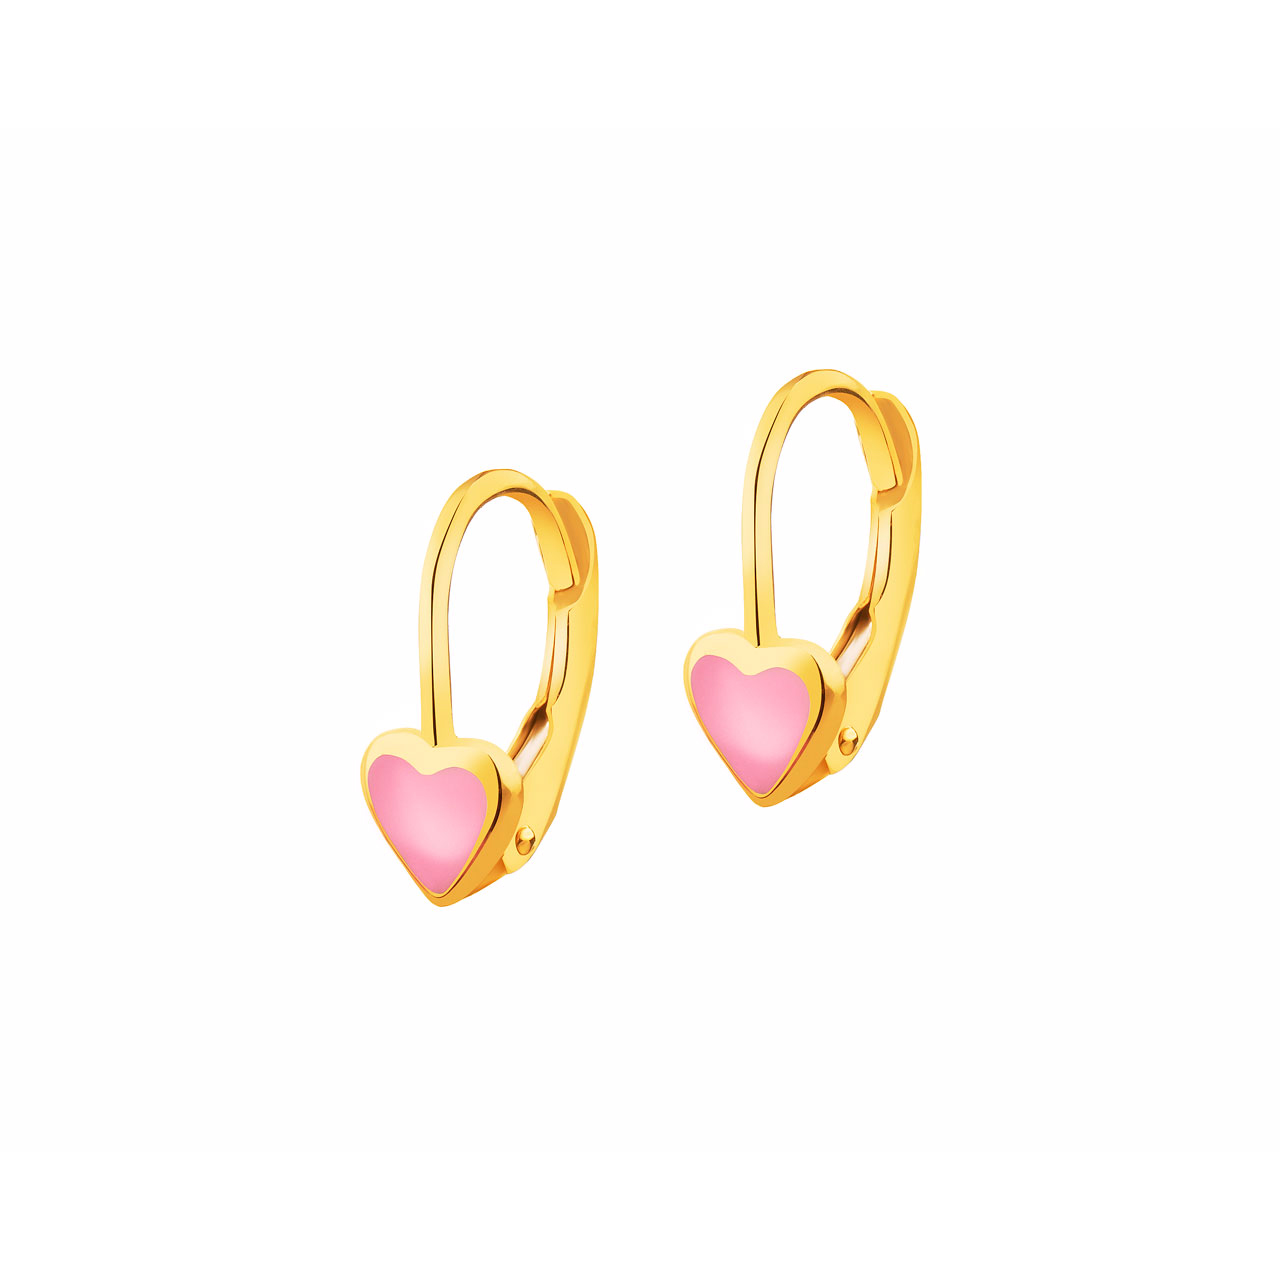 Wholesale OEM/ODM Jewelry Custom 14K 18K yellow gold earrings design yellow gold earring supplier